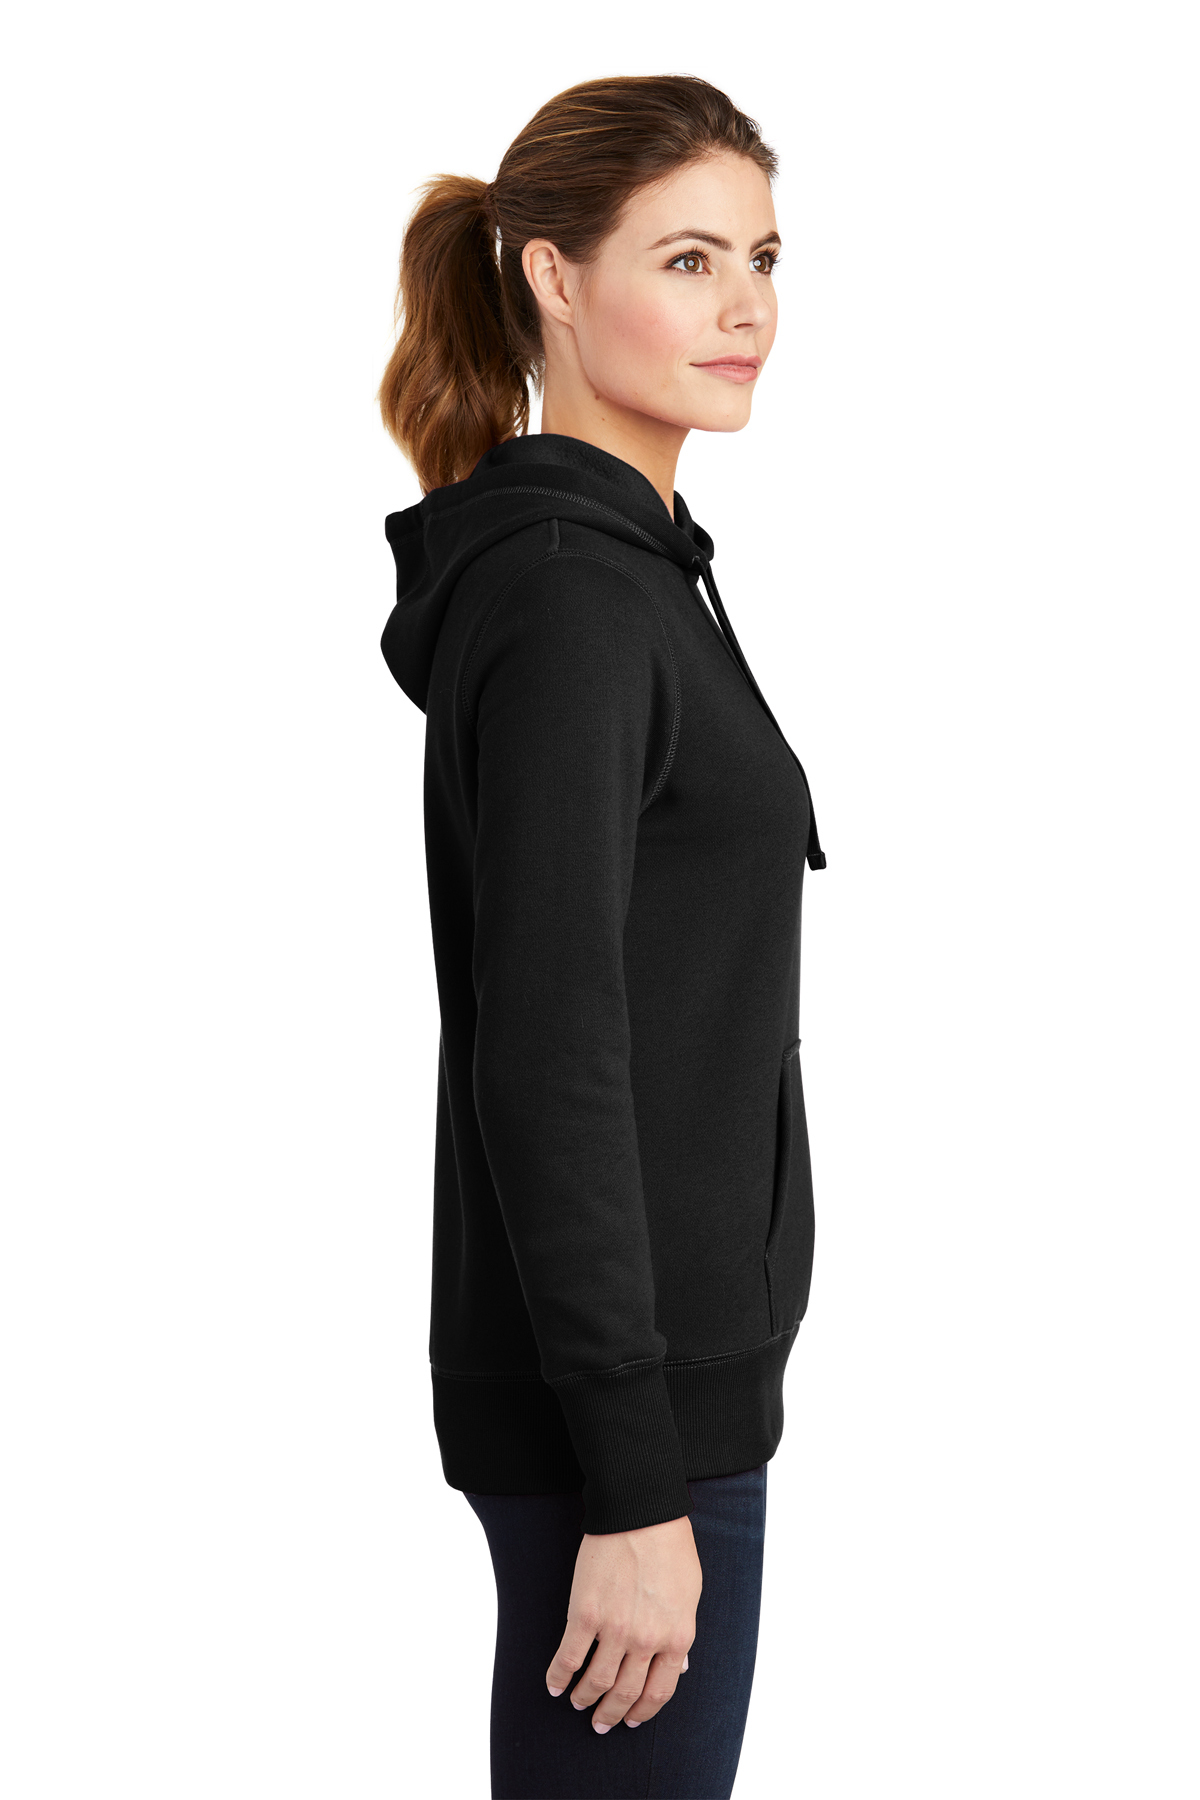 Pullover Sport-Tek Sweatshirt | Ladies Sport-Tek Product | Hooded